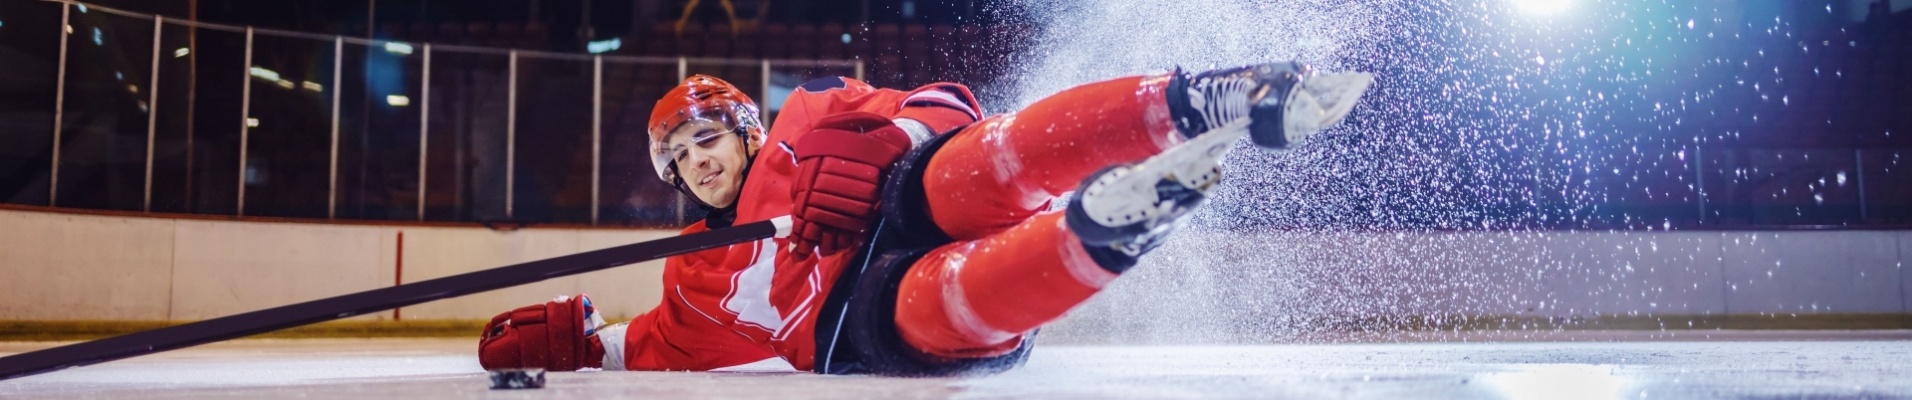 joueur-hockey-sur-glace-marquant-but-au-sol-canada